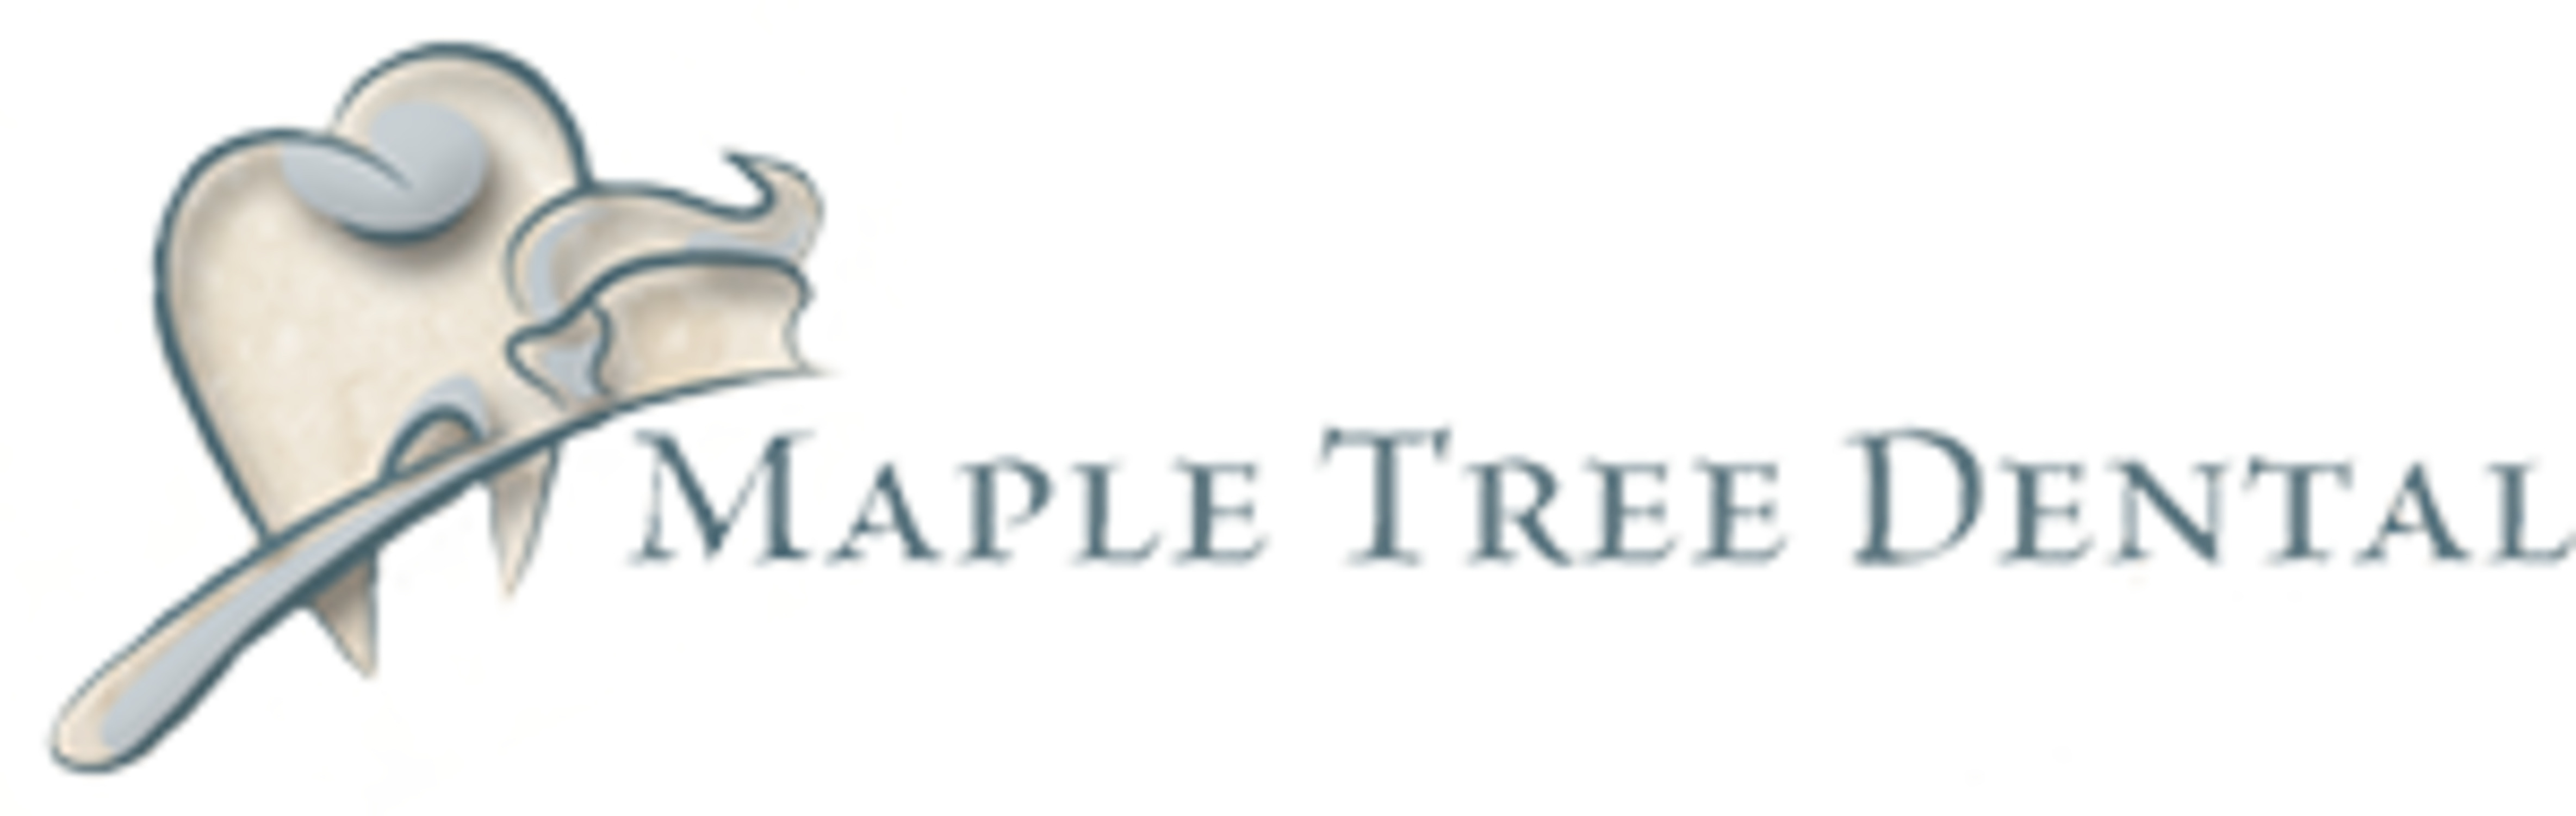 Company logo of Maple Tree Dental - Easton